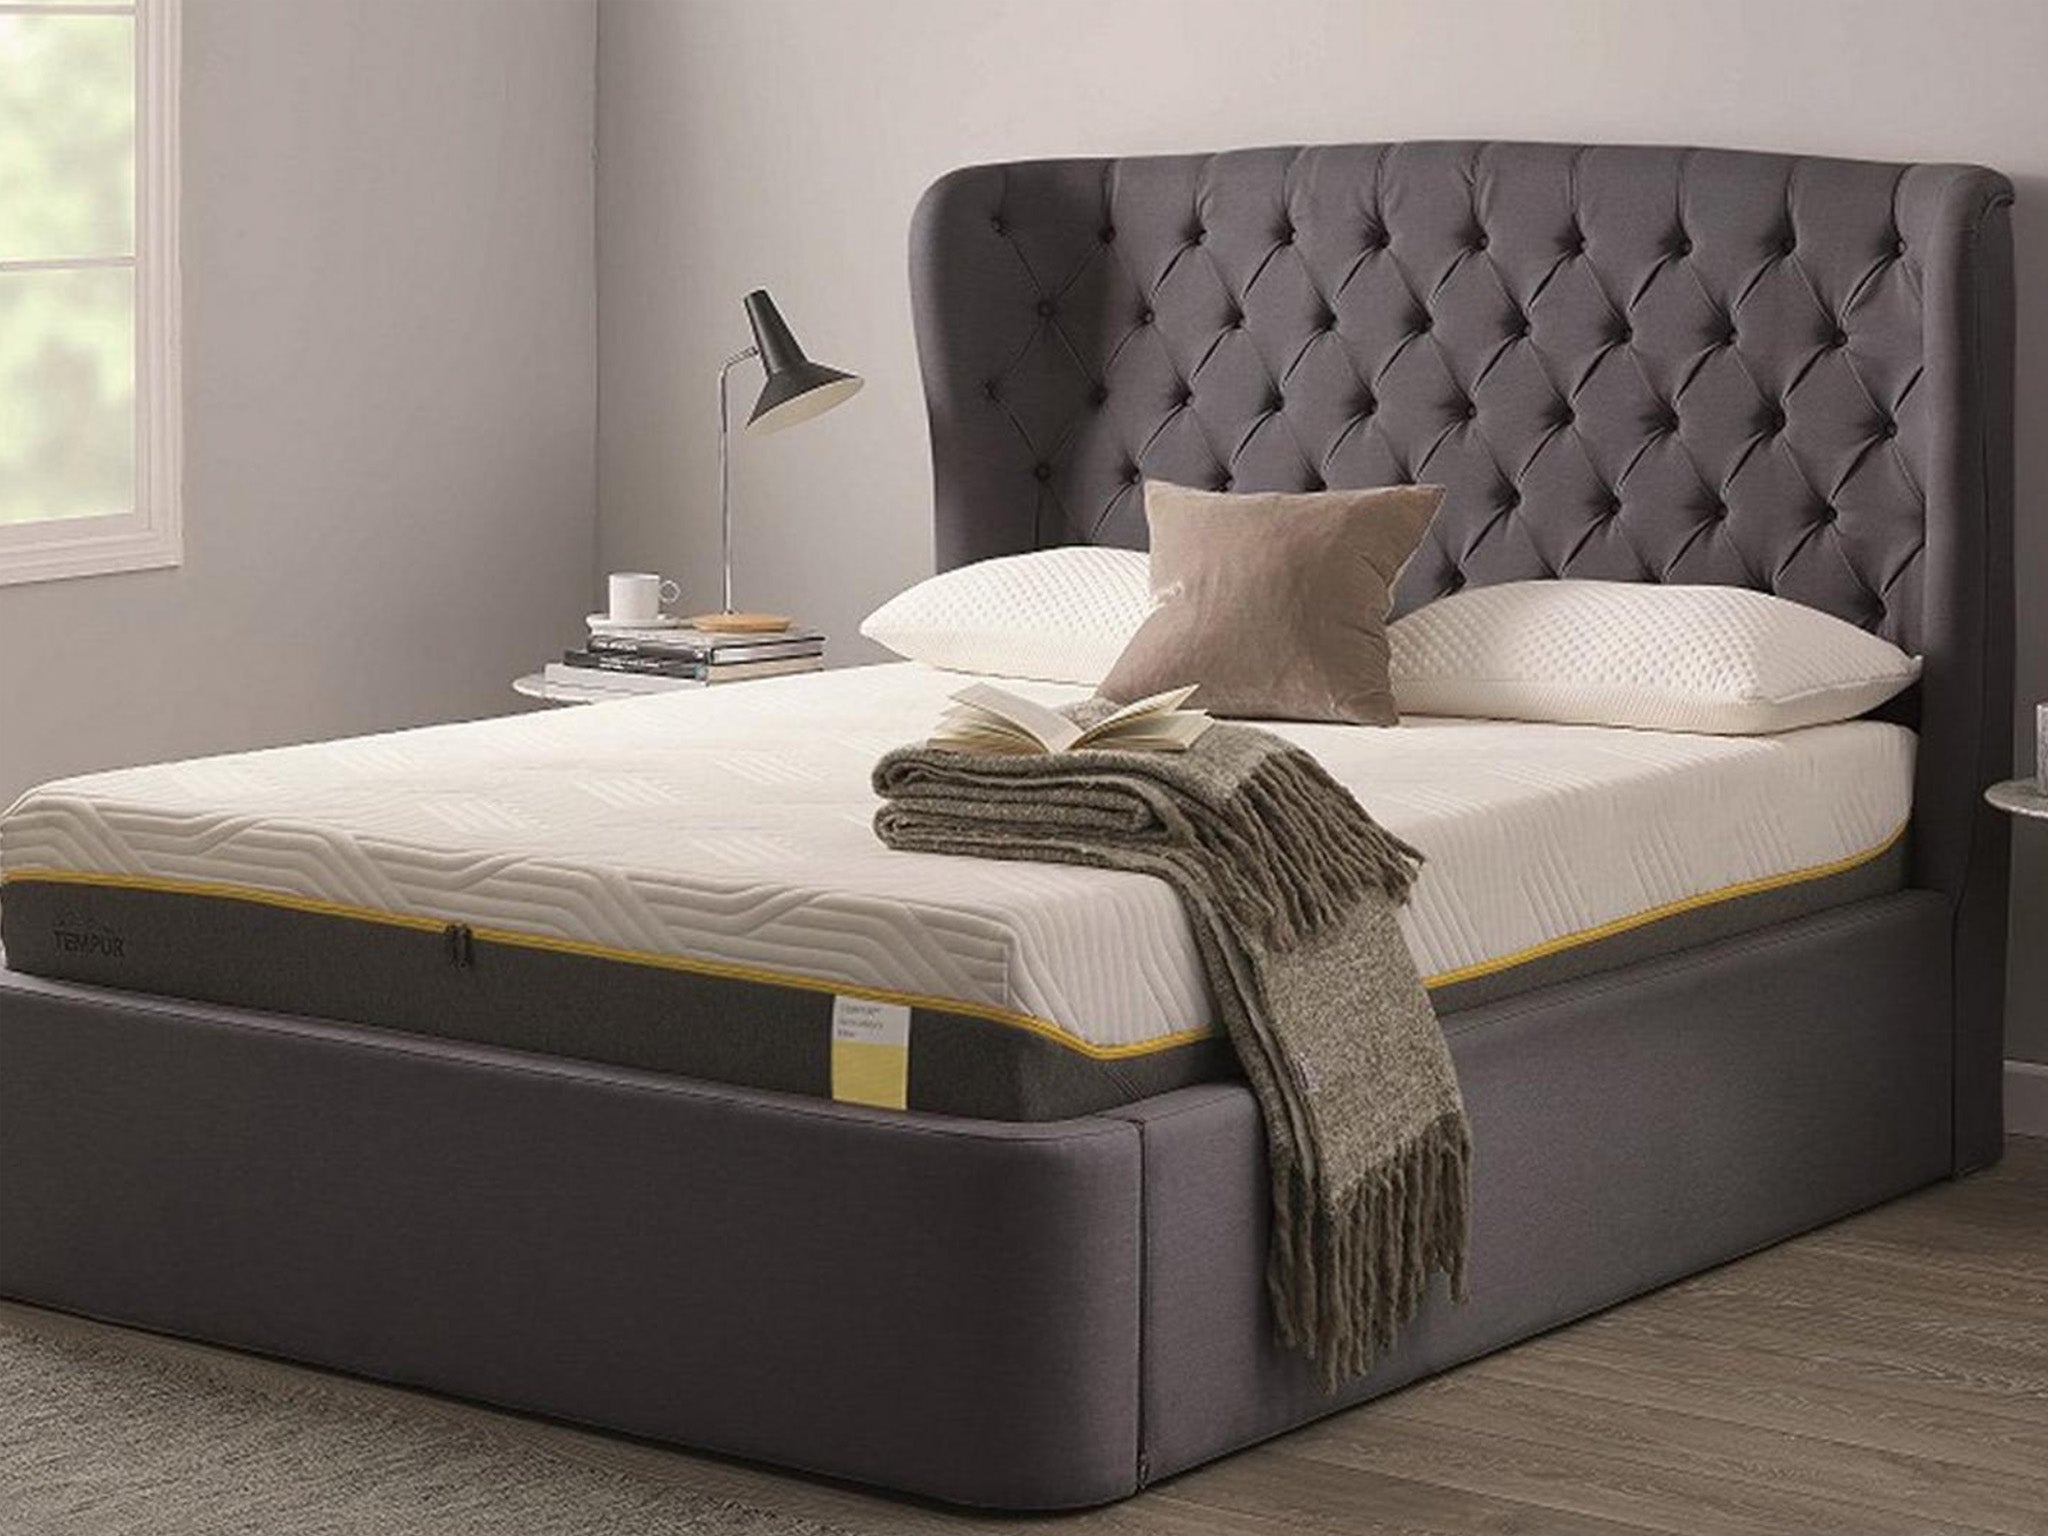 tempur-mattress-review-indybest.jpg